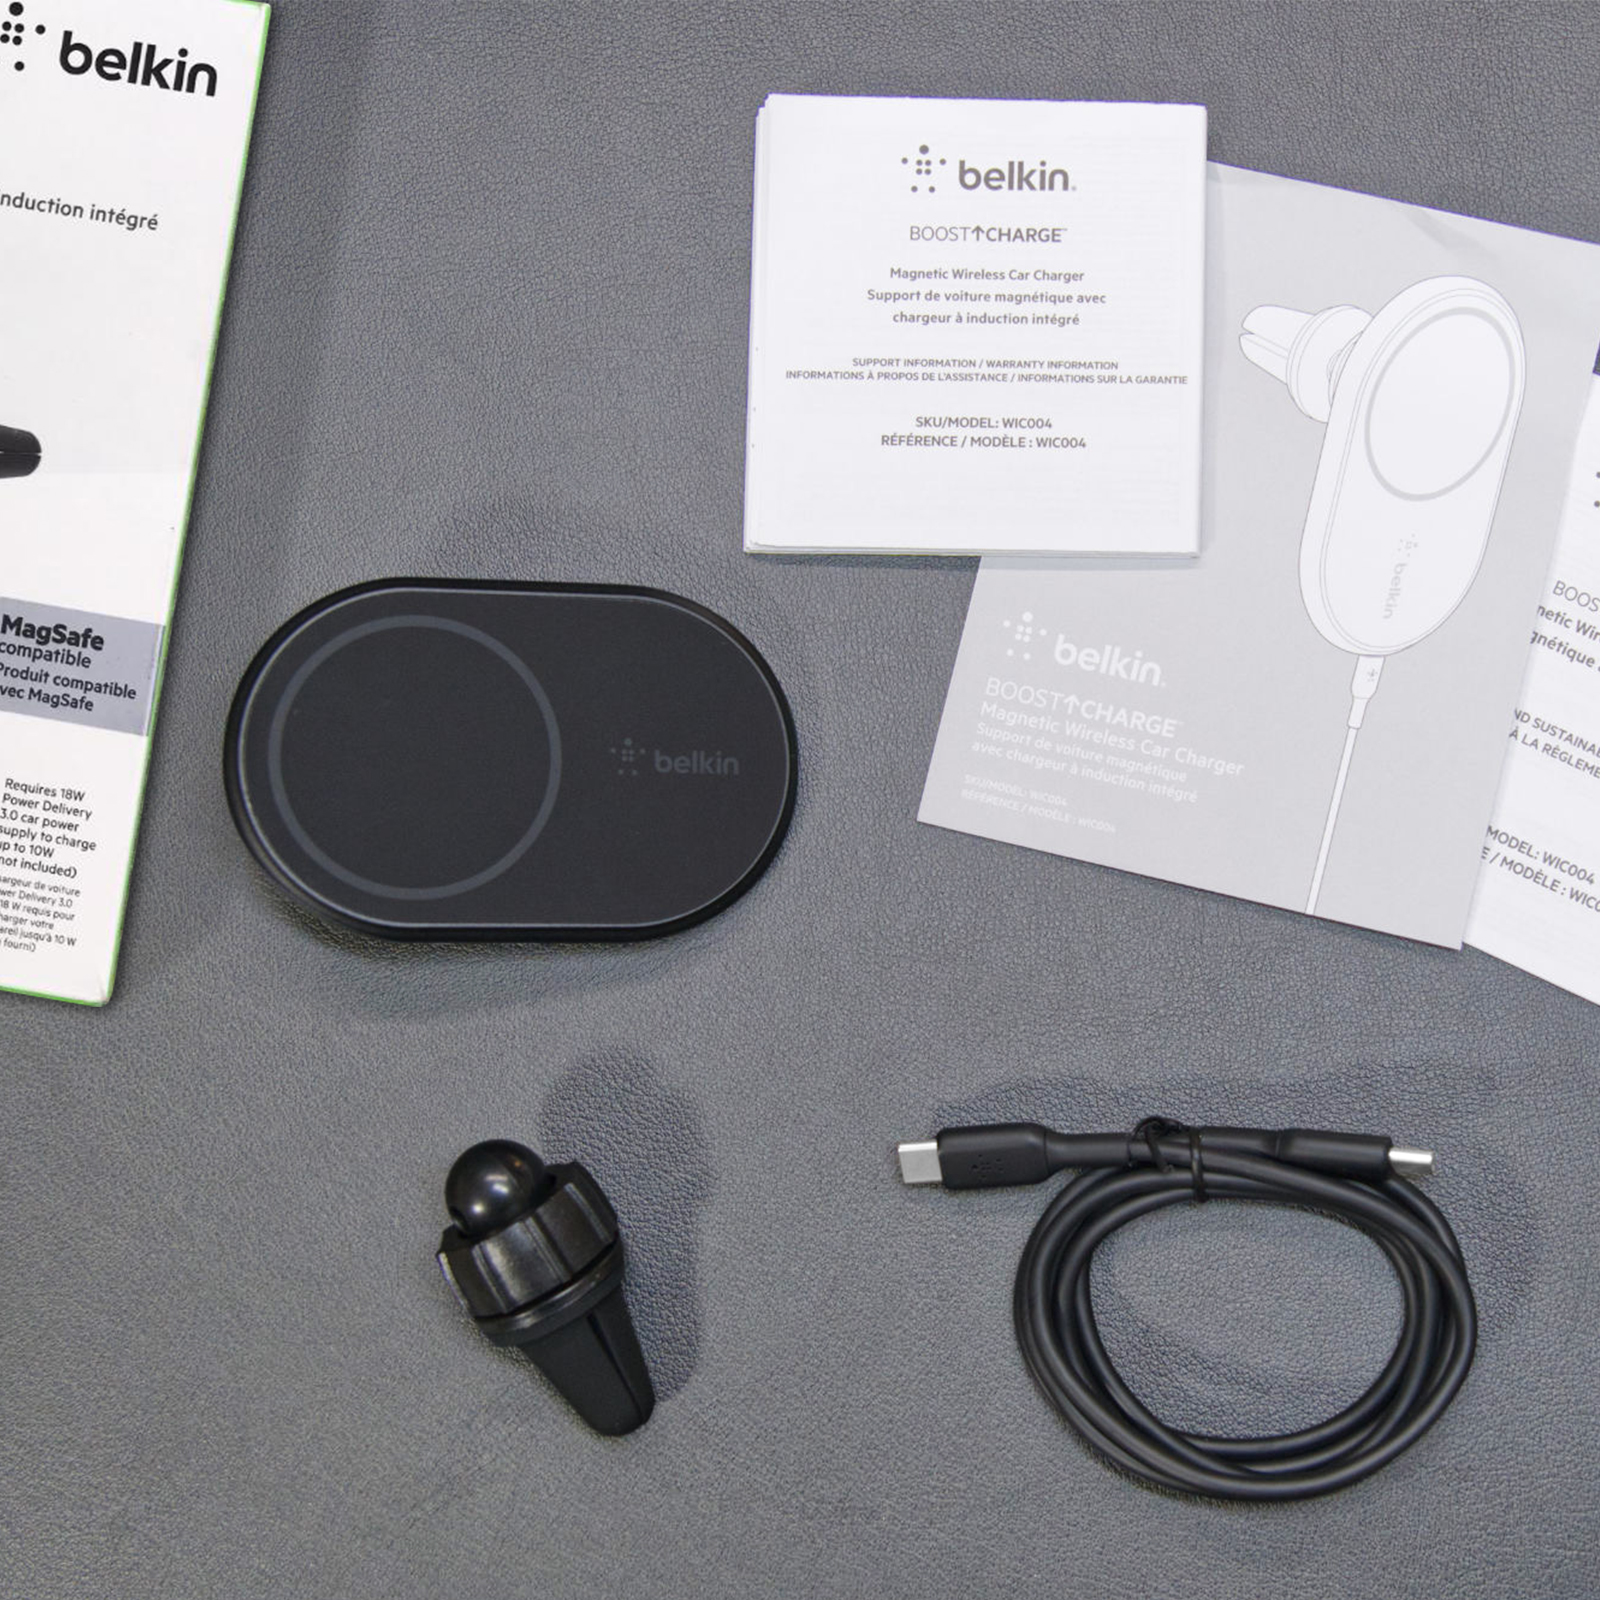 Aperçu du support PRO compatible MagSafe de Belkin pour voiture